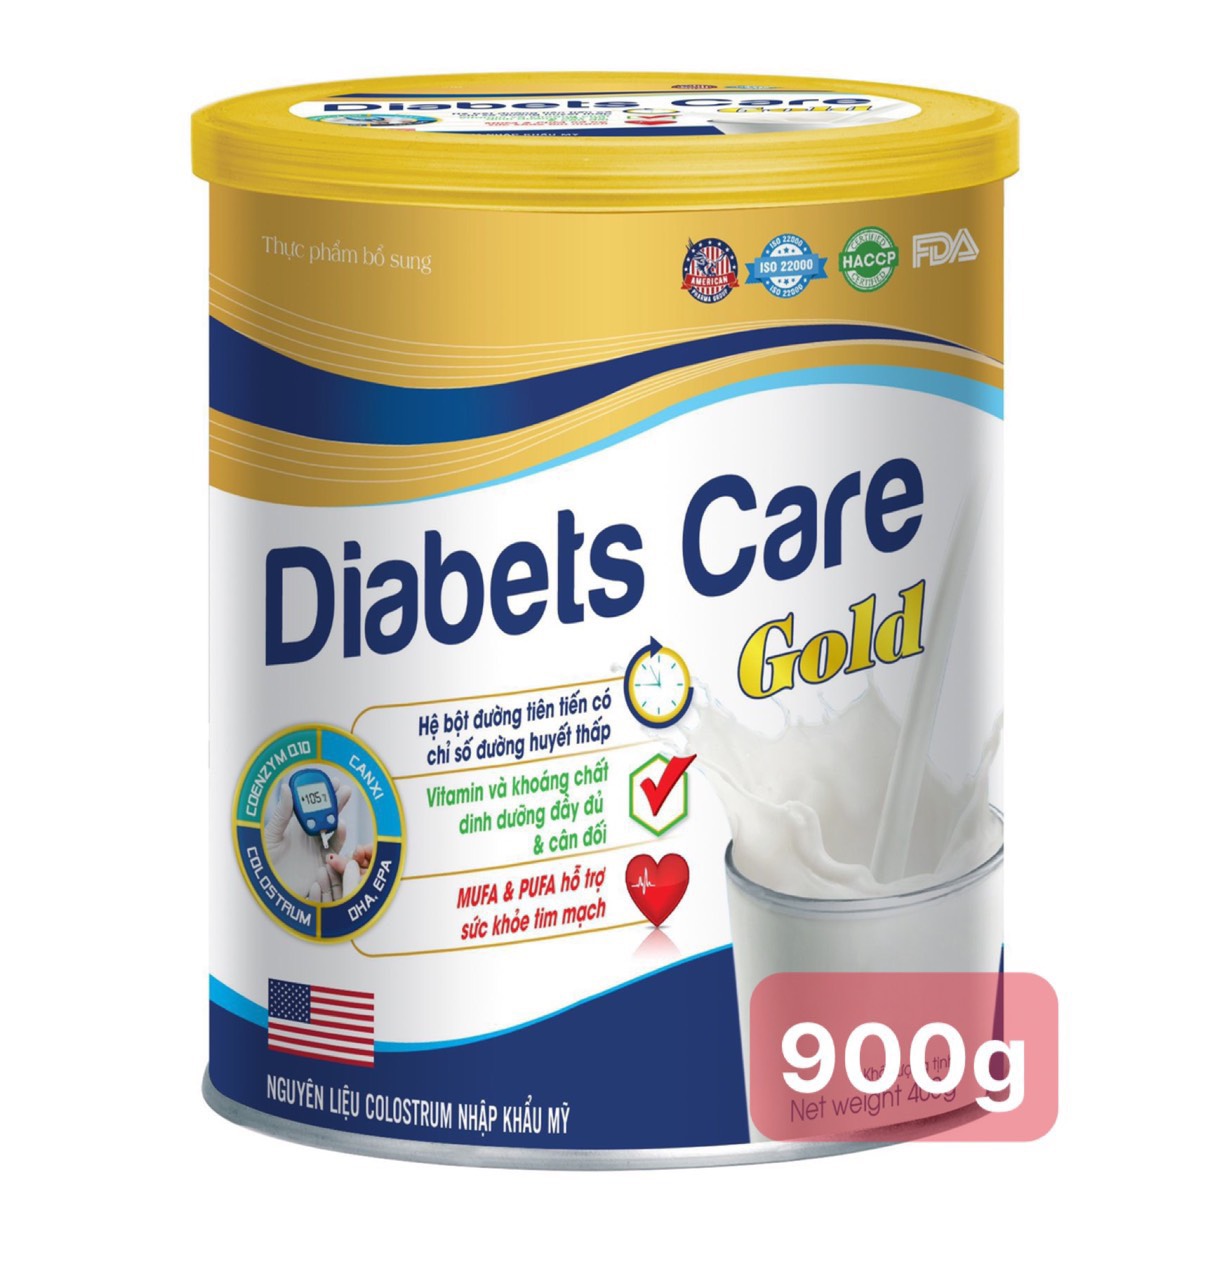 [Hộp 900g] Sữa Tiểu Đường Diabests Care Gold Bổ Sung Vitamin Và Khoáng Chất Giúp Tăng Cường Sức Đề Kháng Hệ Tiêu Hóa Khỏe Mạnh Giảm Giảm Đường Huyết Khỏe Tim Mạch - VNmart Online